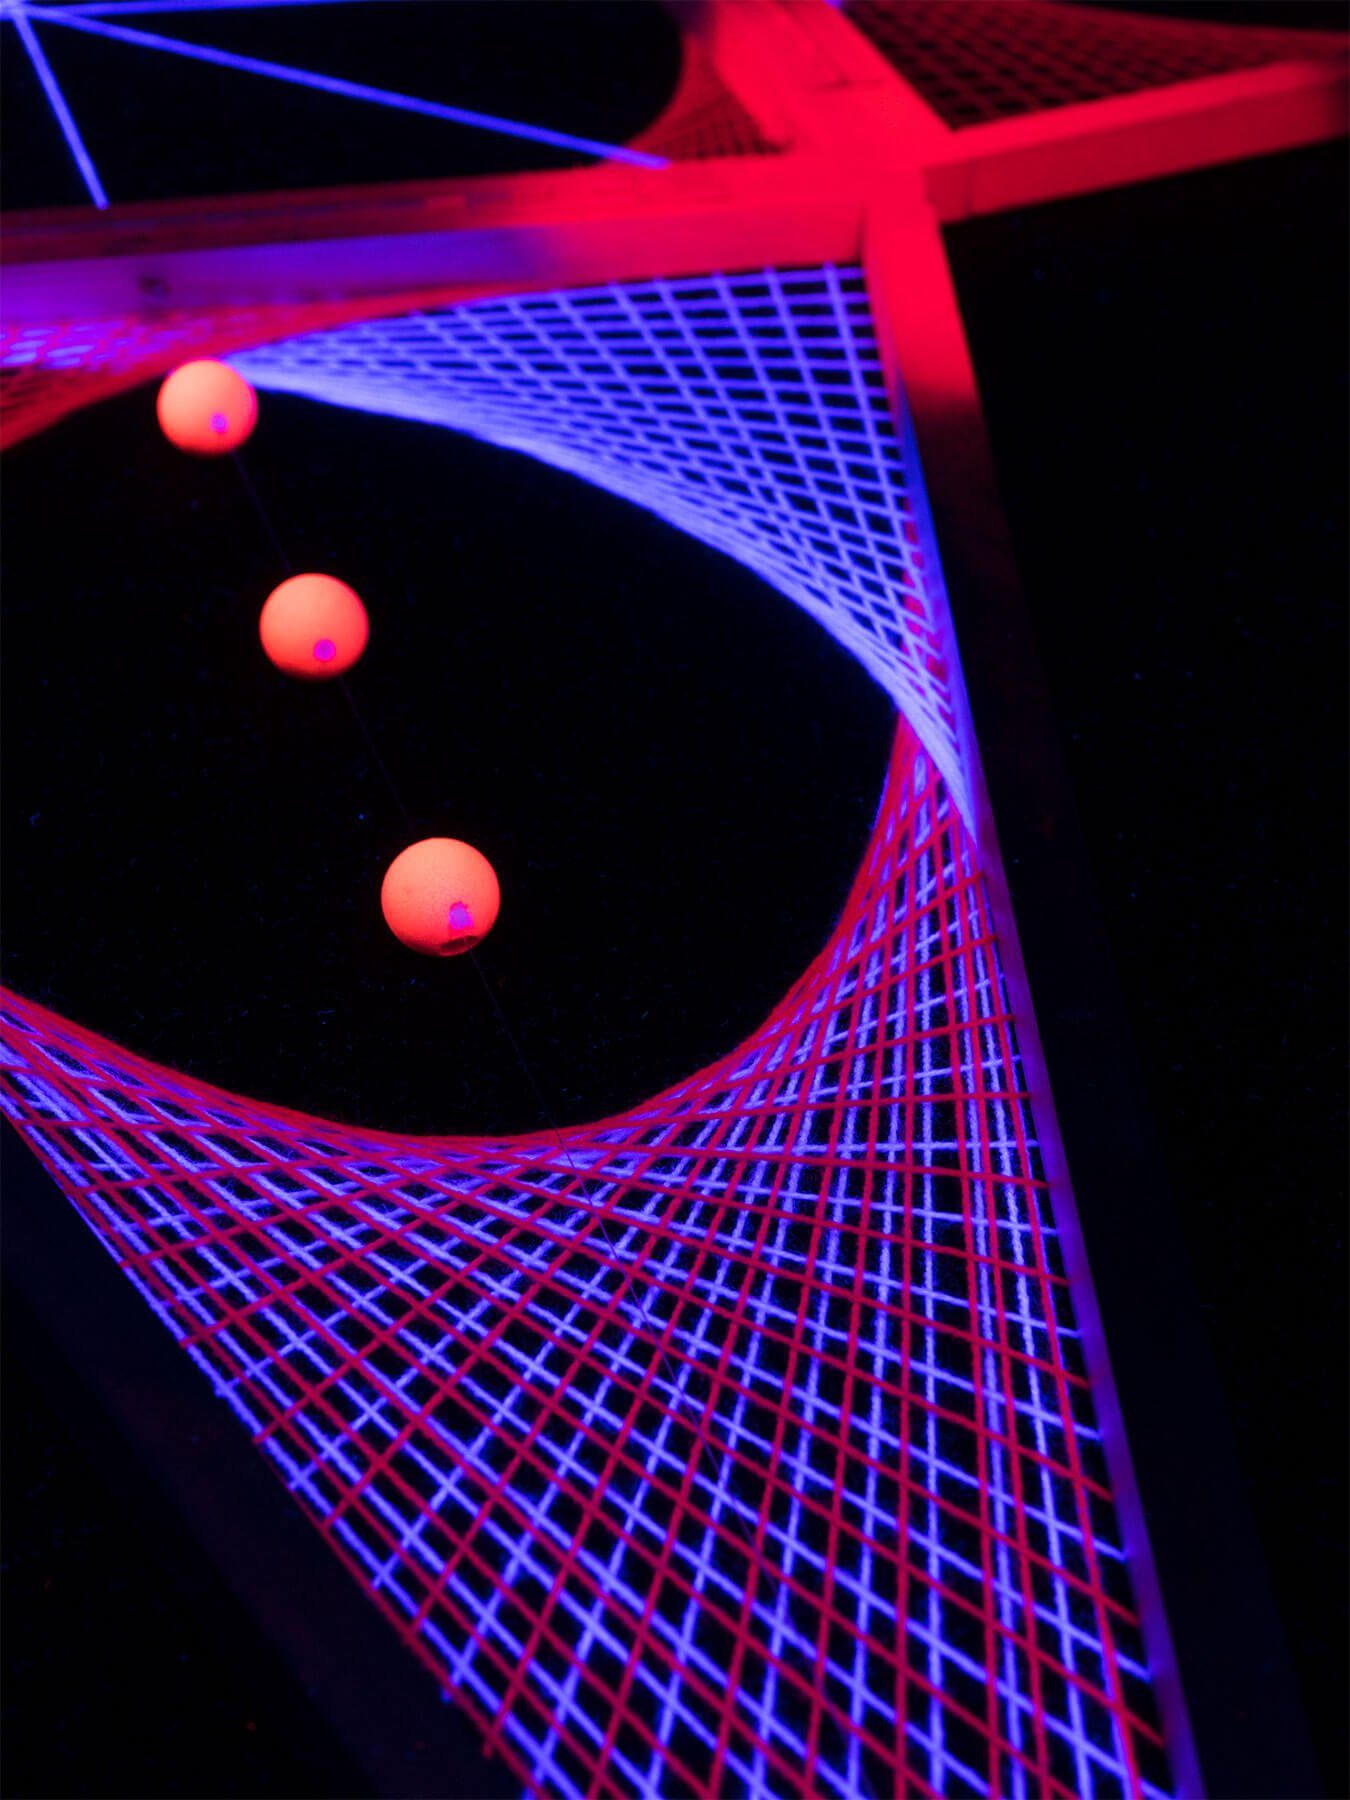 Dekoobjekt leuchtet Pyramid Stern Schwarzlicht Schwarzlicht UV-aktiv, StringArt unter "Convertible Pink", PSYWORK 3D 3m,